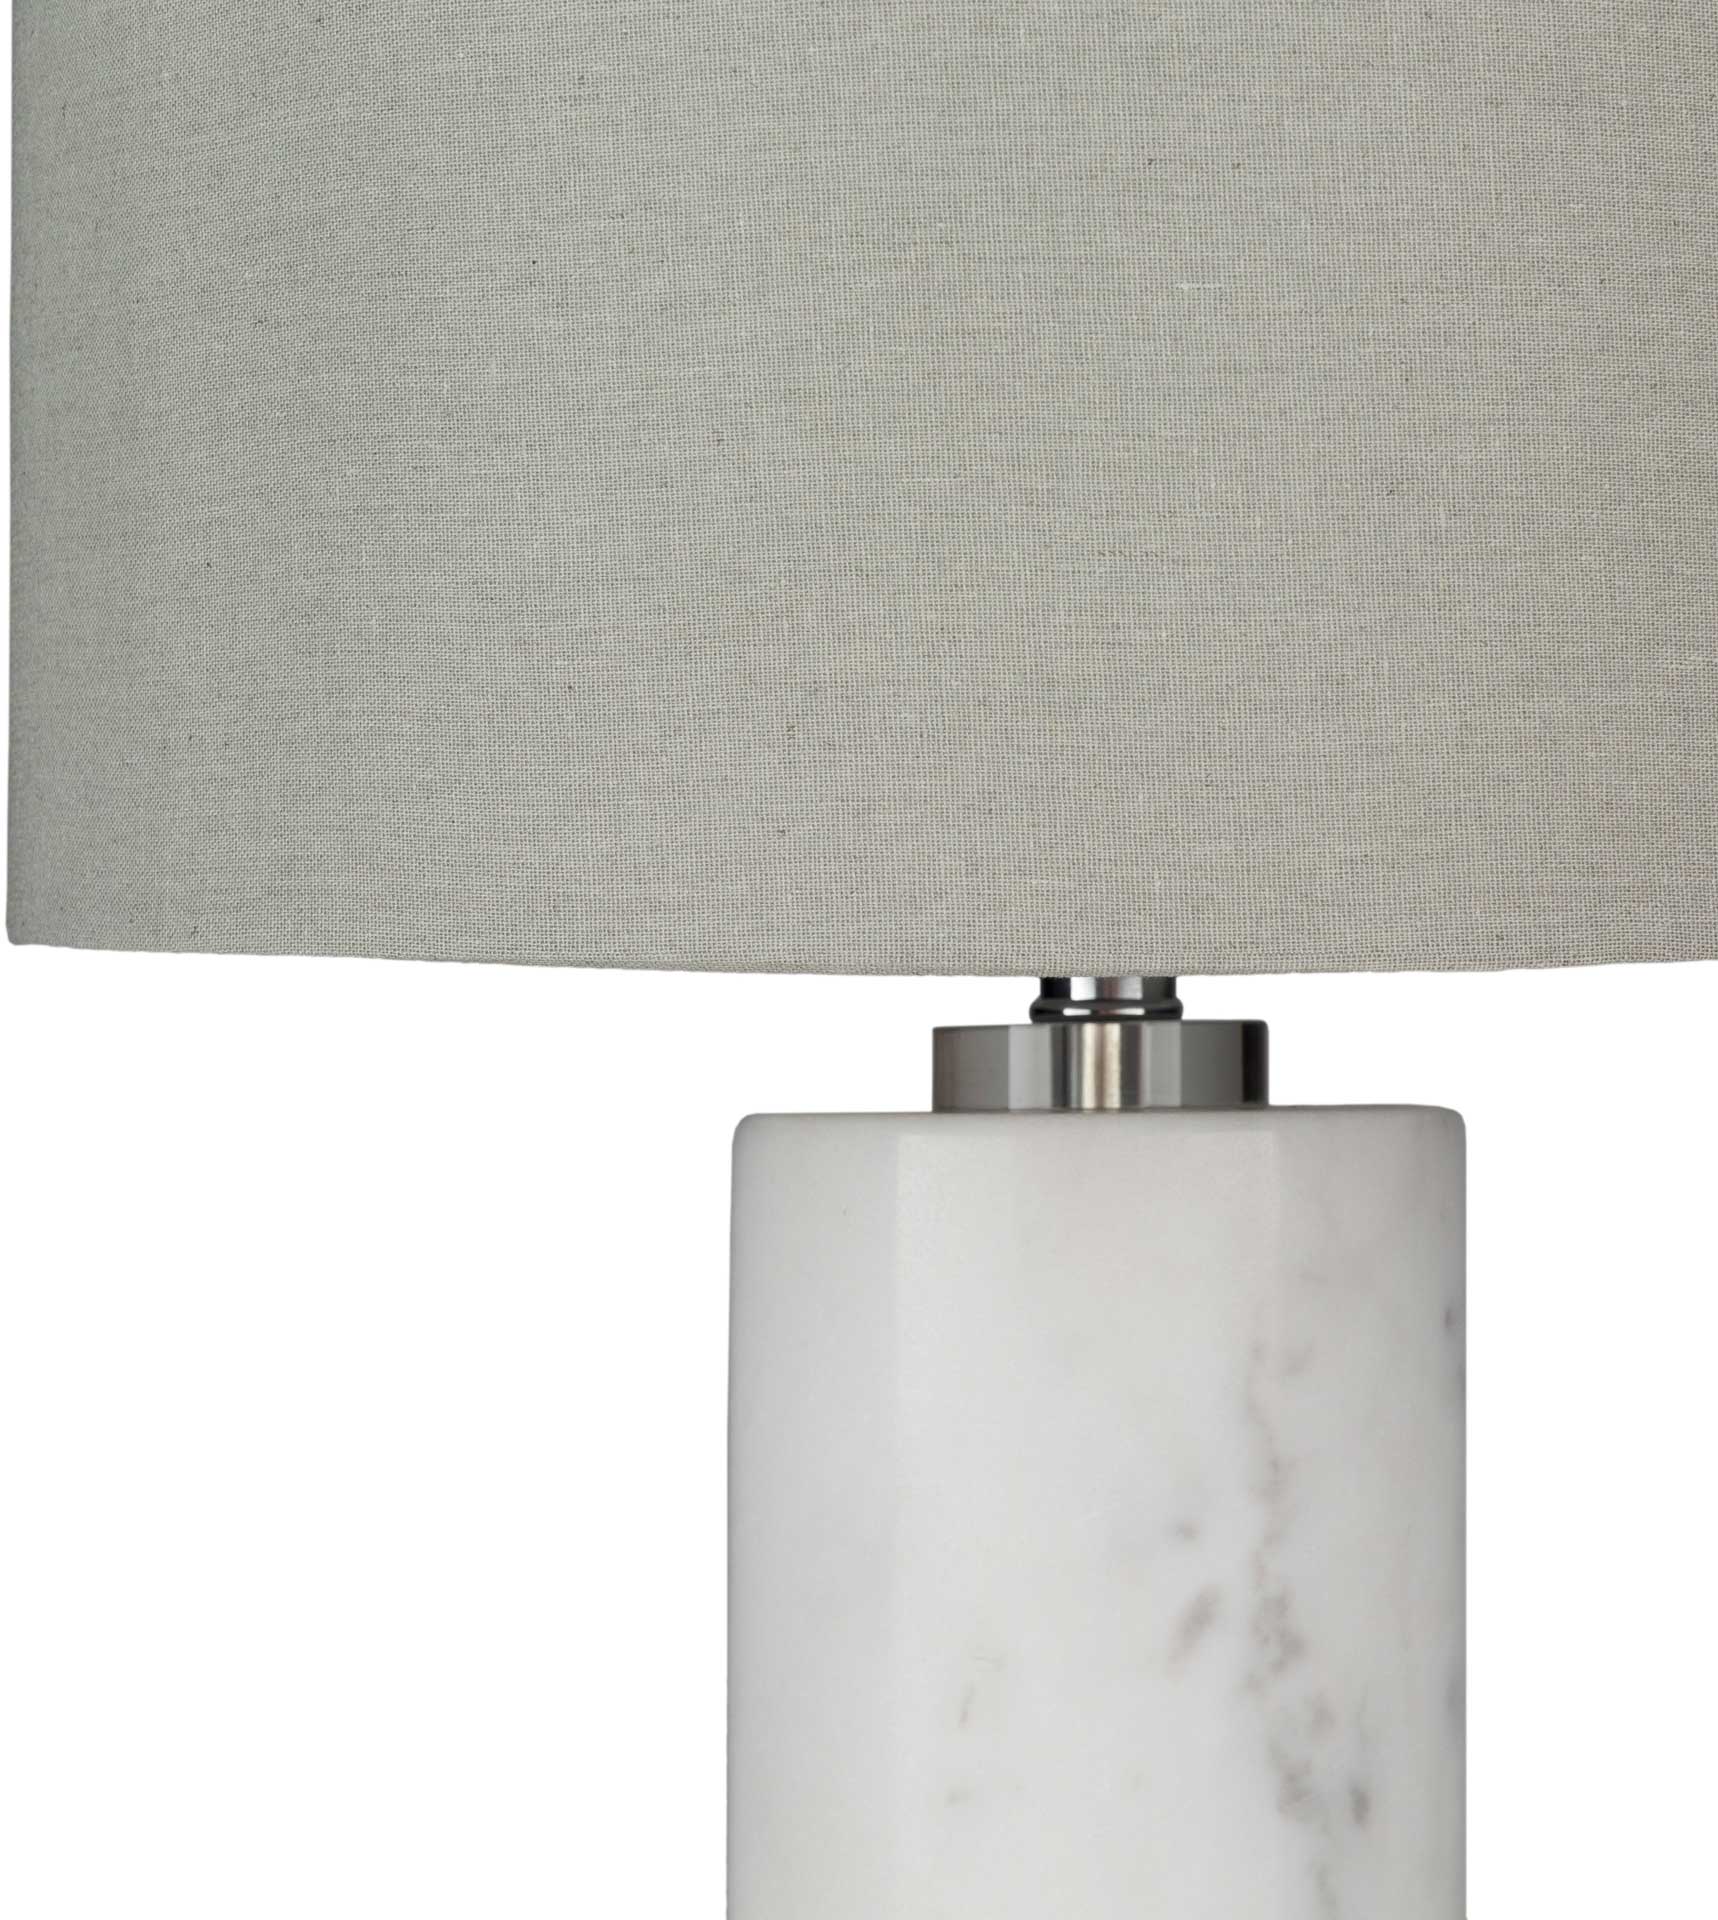 Robert Table Lamp Light Gray/White/Gray